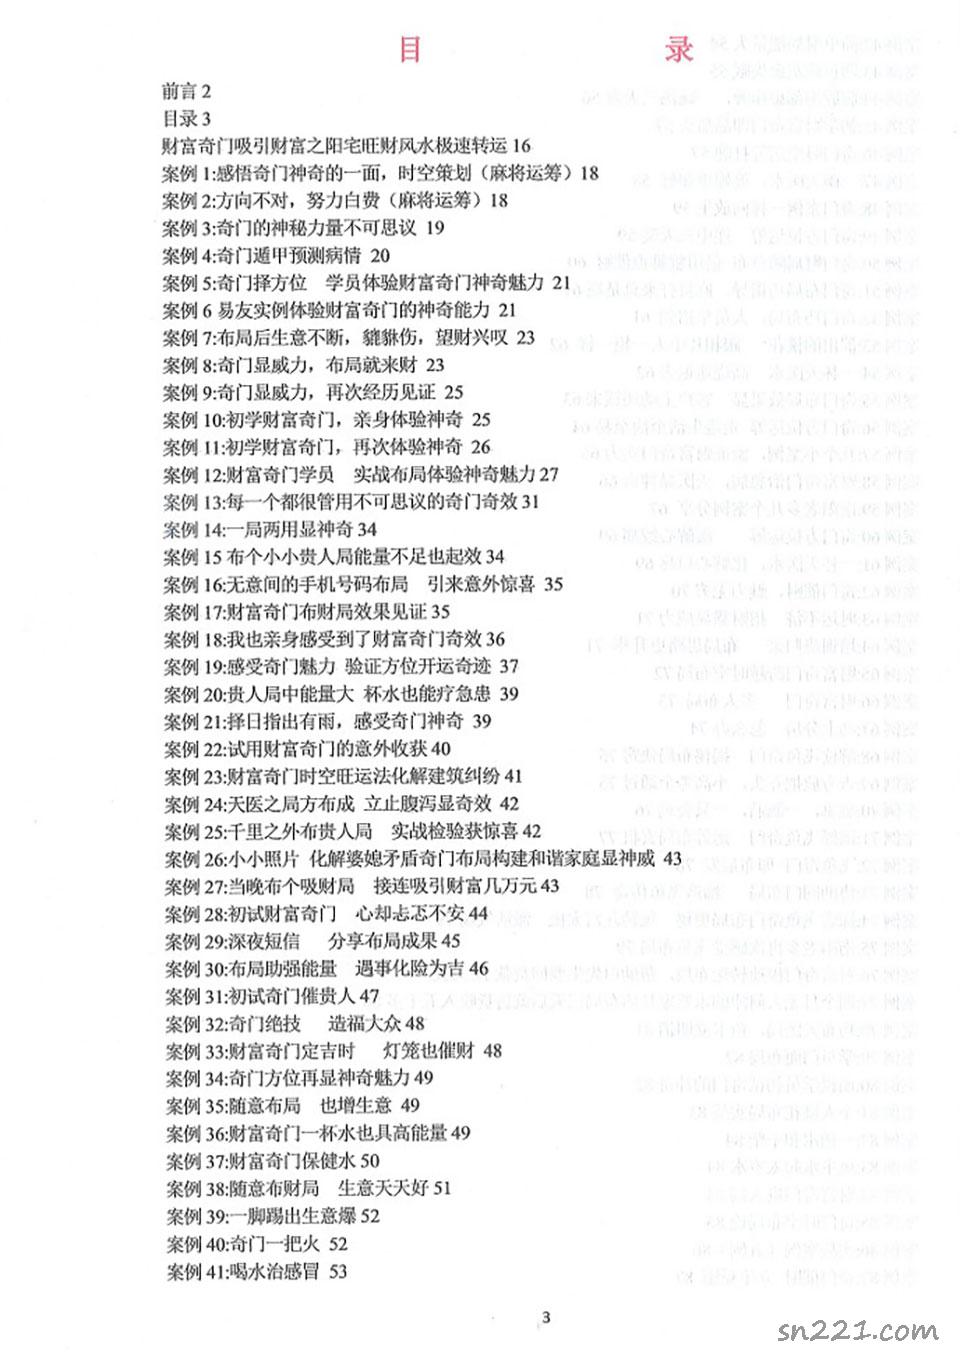 飛魚奇門運籌秘術案例566個.pdf